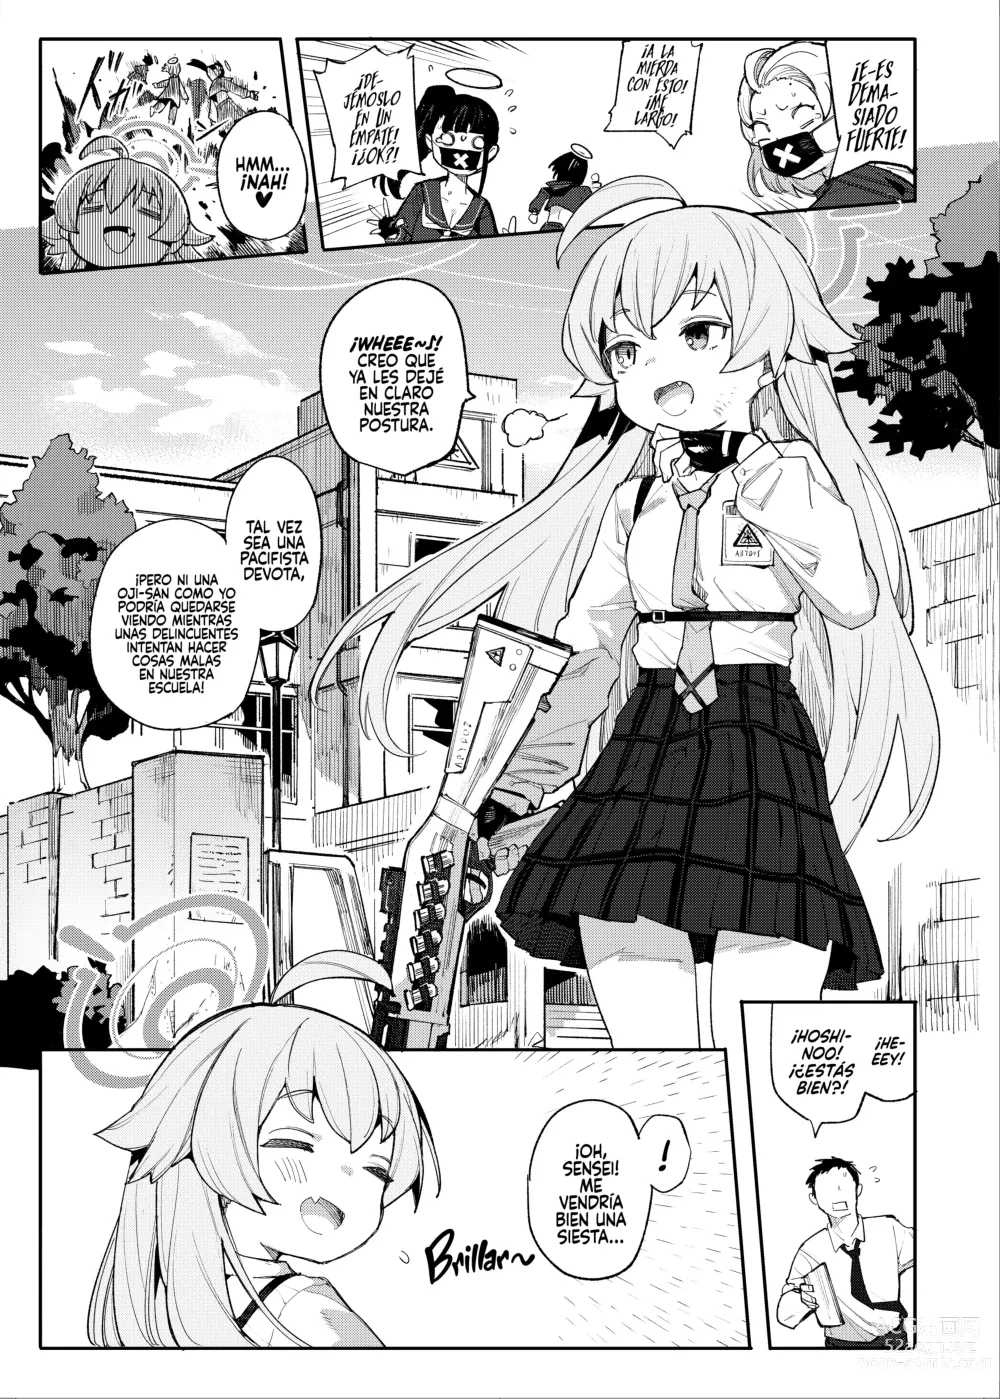 Page 2 of doujinshi ¡Hoshino También Quiere que la Mimen!